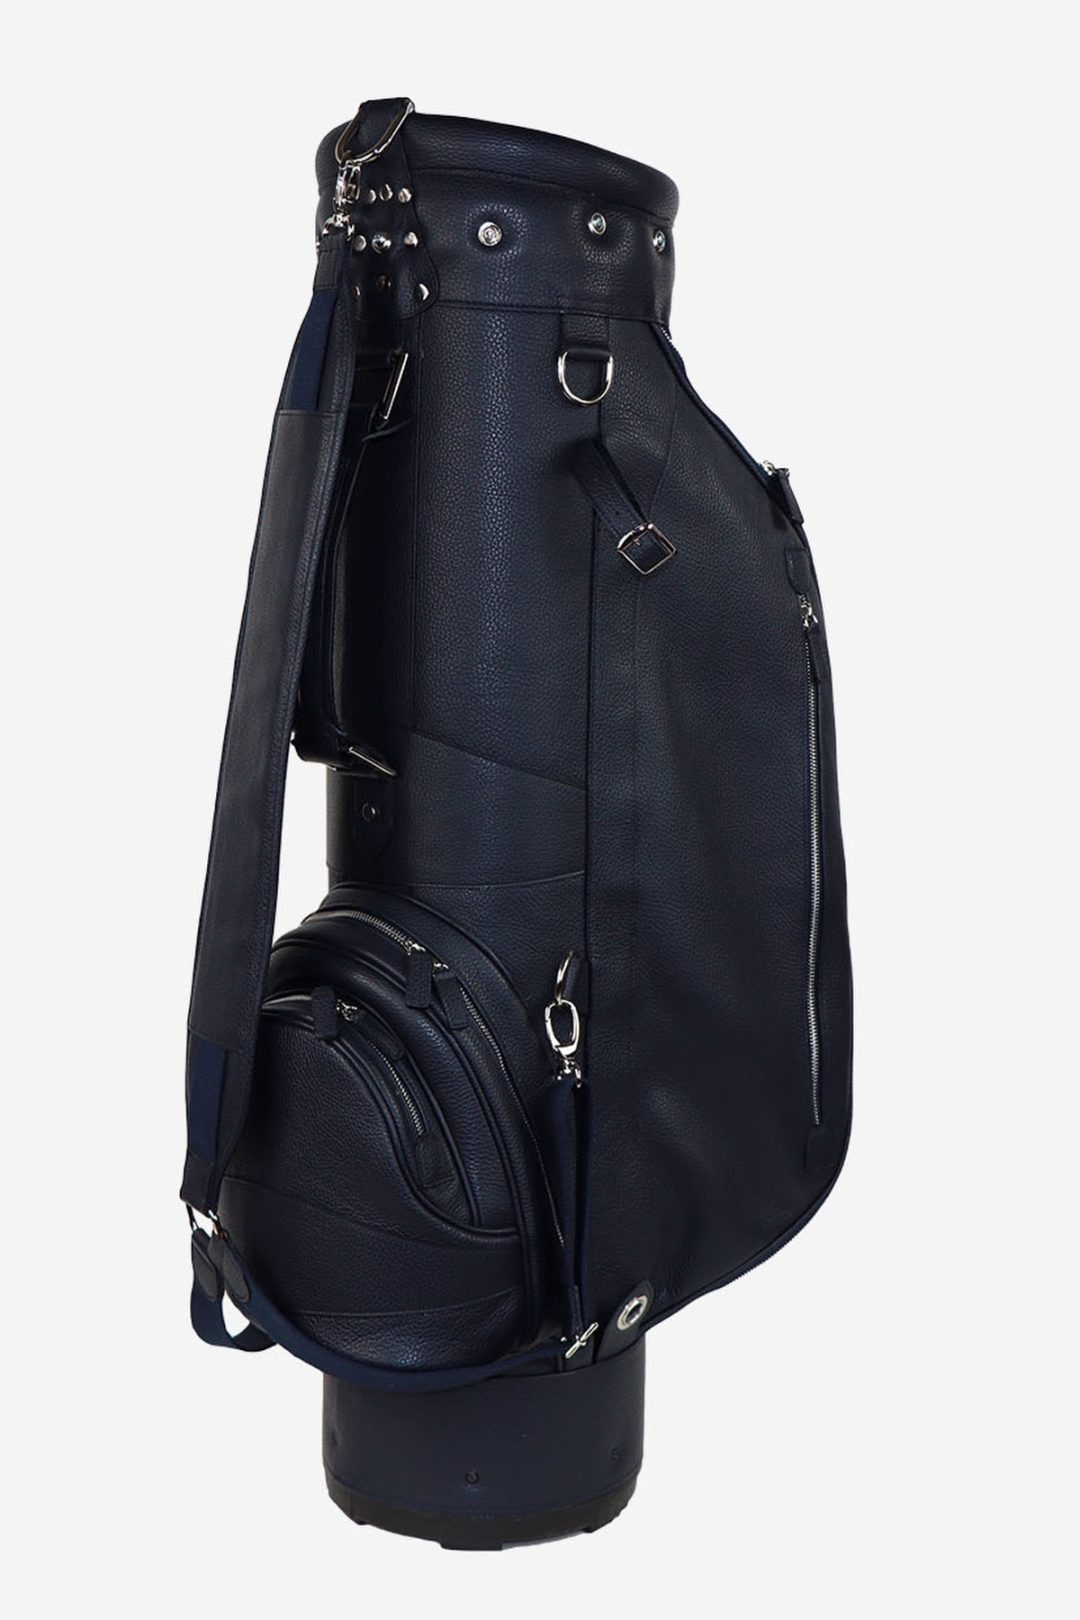 Prada Tessuto and Saffiano Golf Bag - Black Sporting Goods, Sports